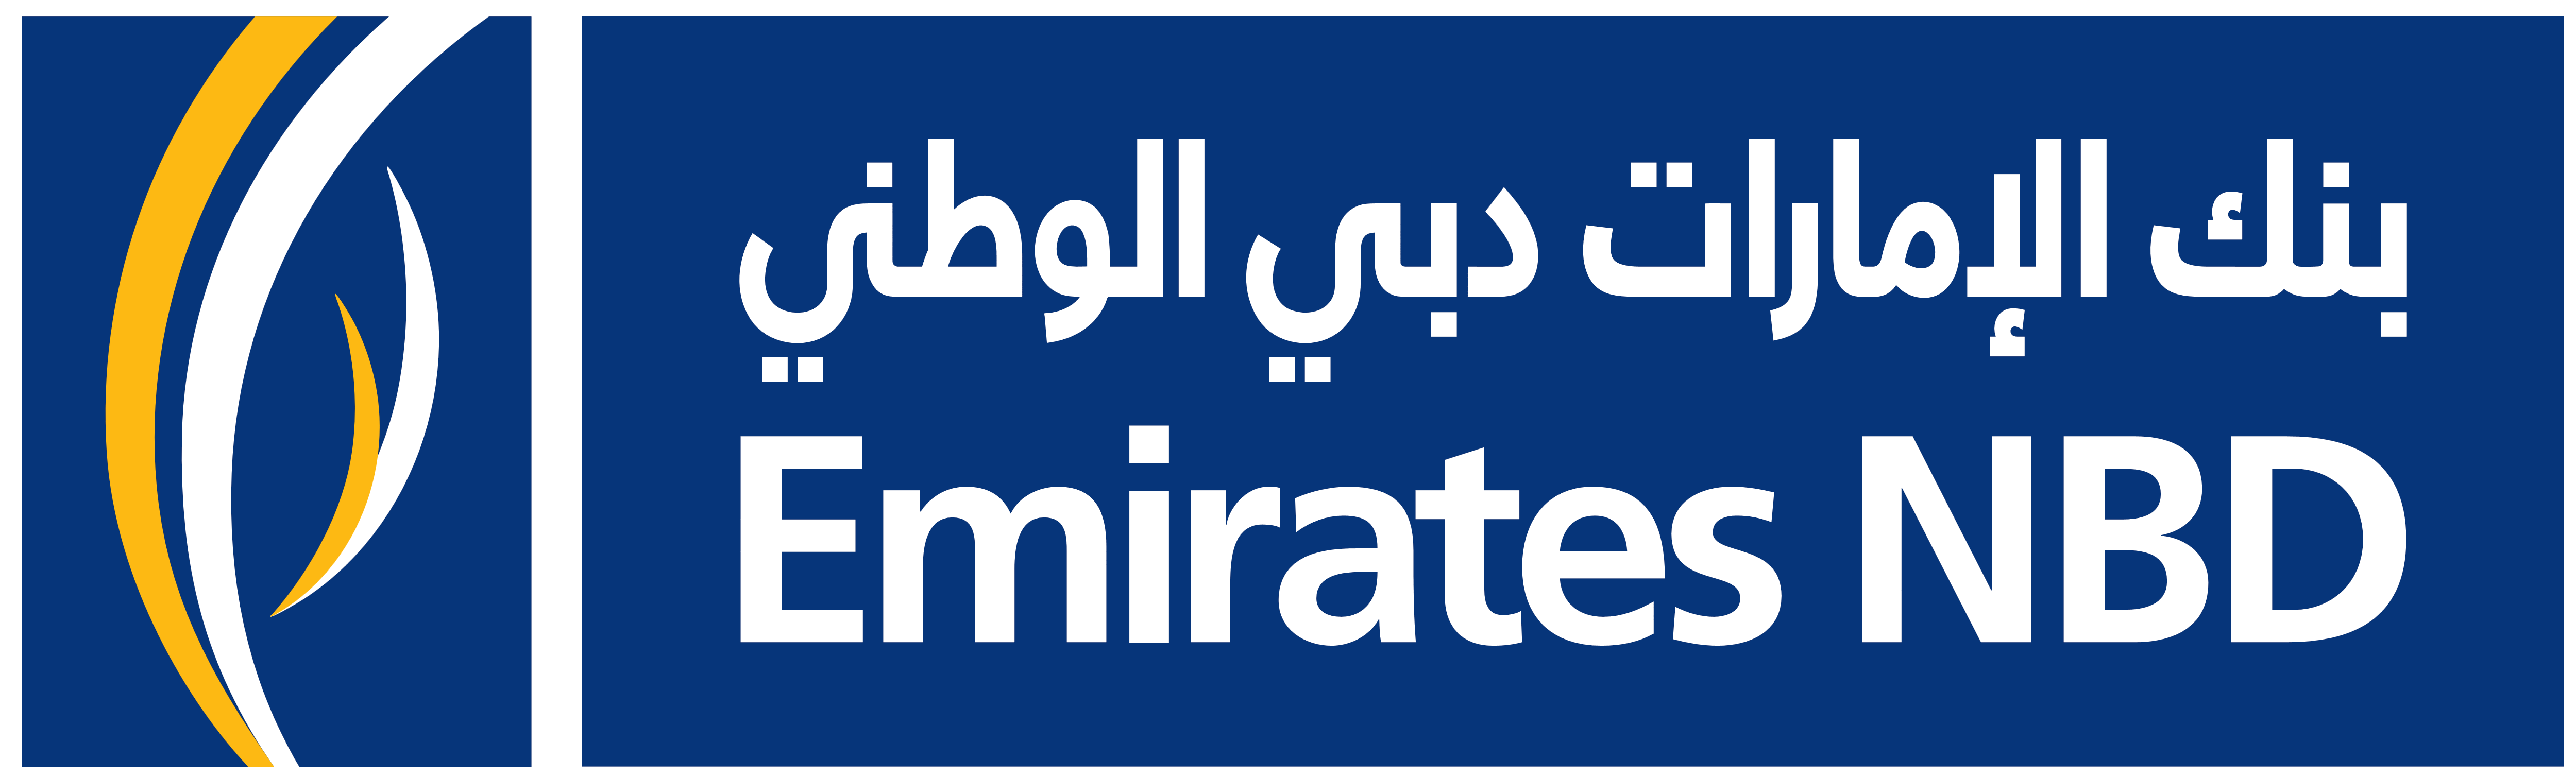 Emirates_NBD_logo